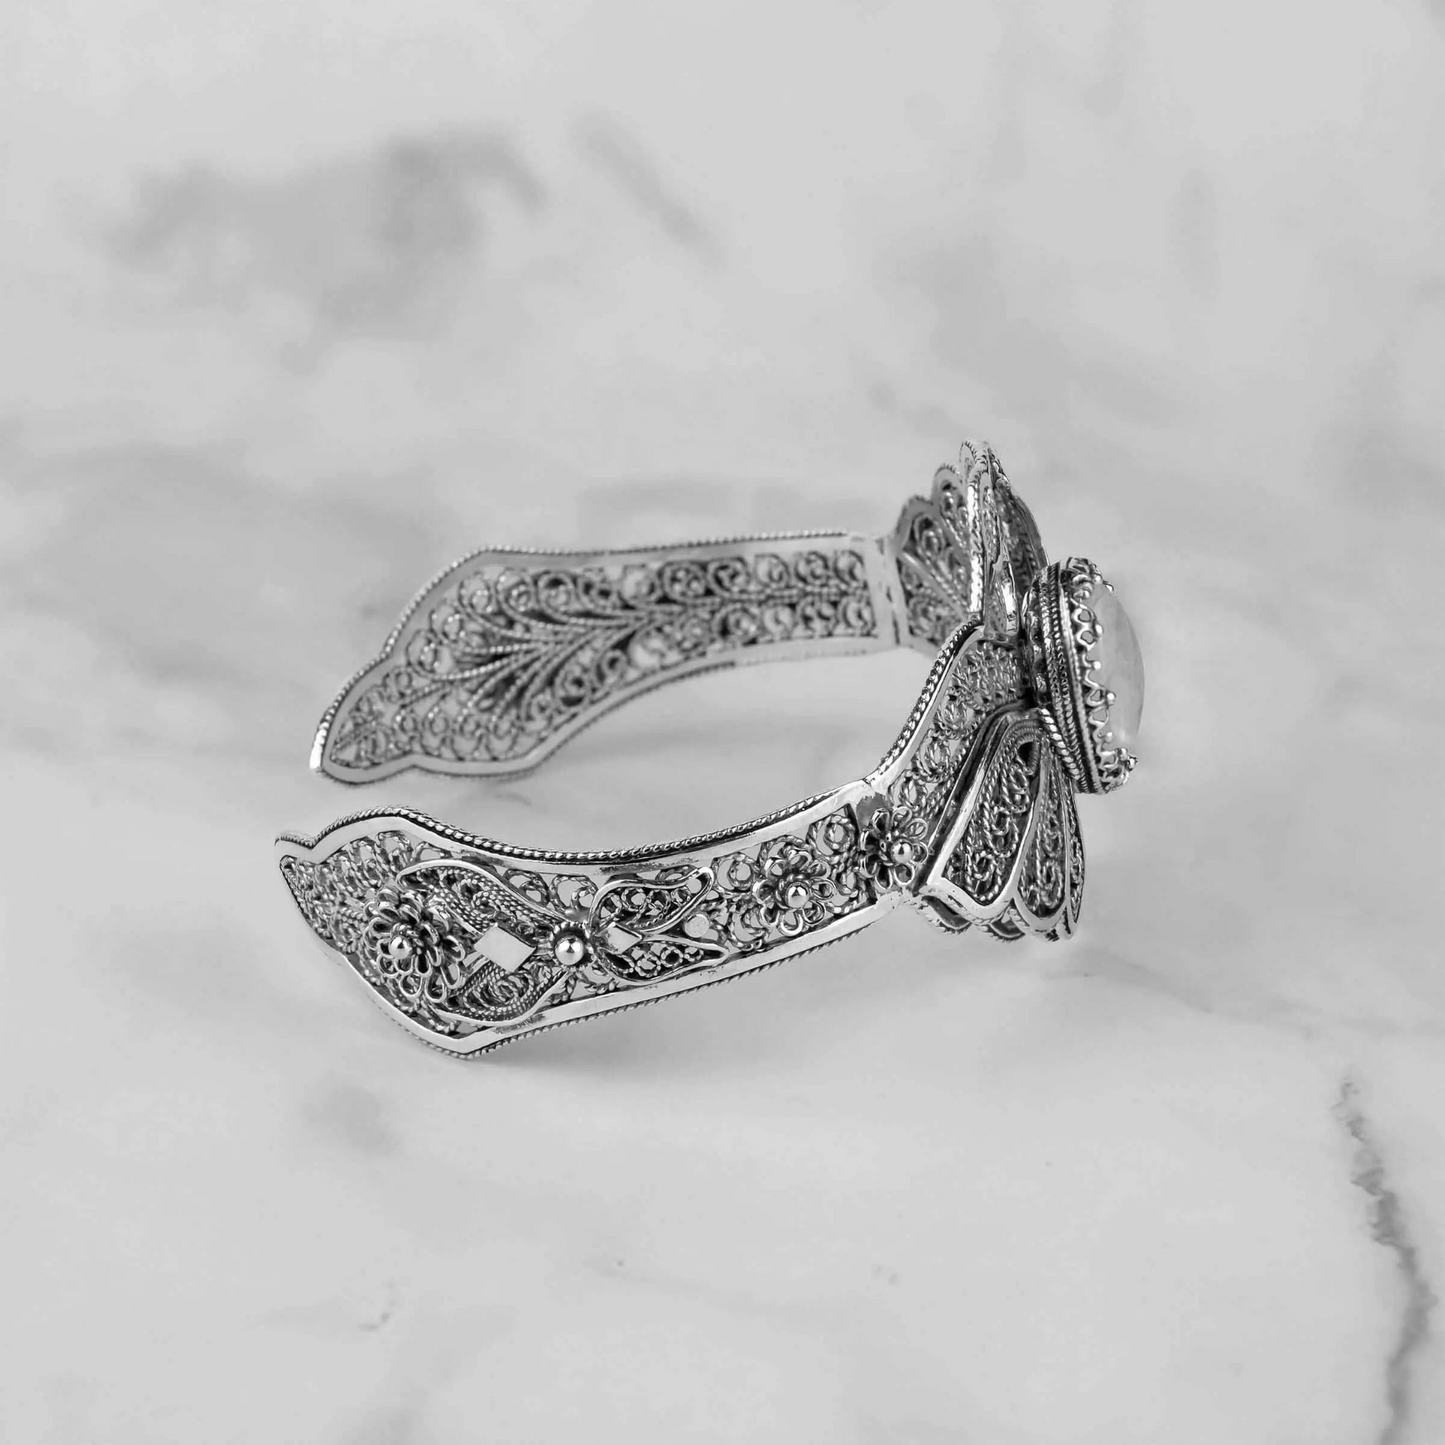 Filigree Art Gray Moonstone Gemstone Double Swan Figured Women Silver Cuff Bracelet